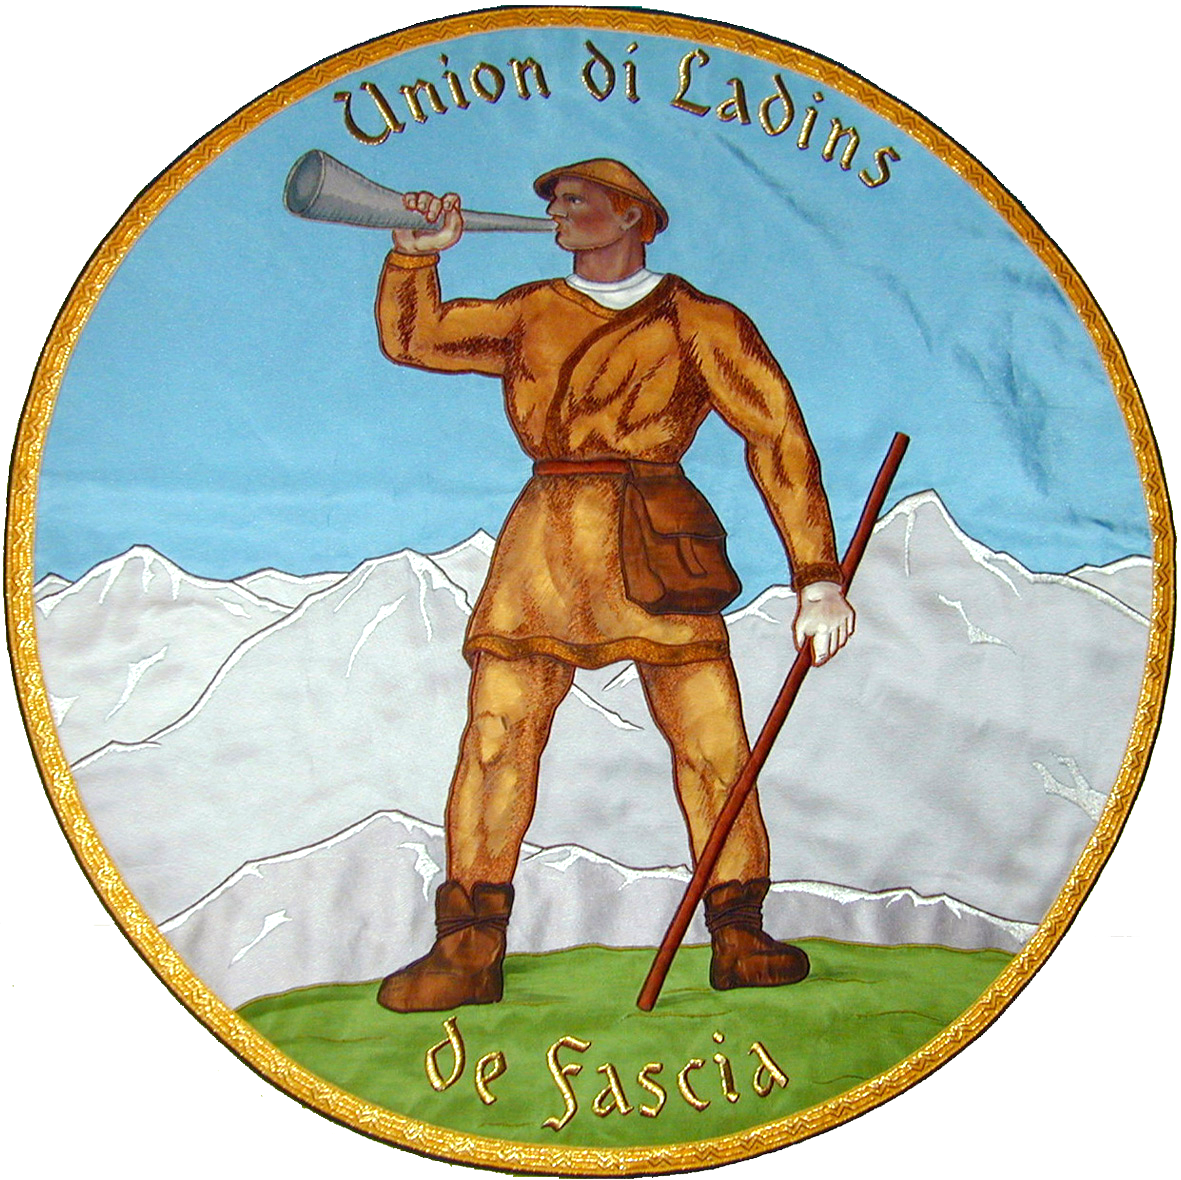 Union Ladins de Fascia